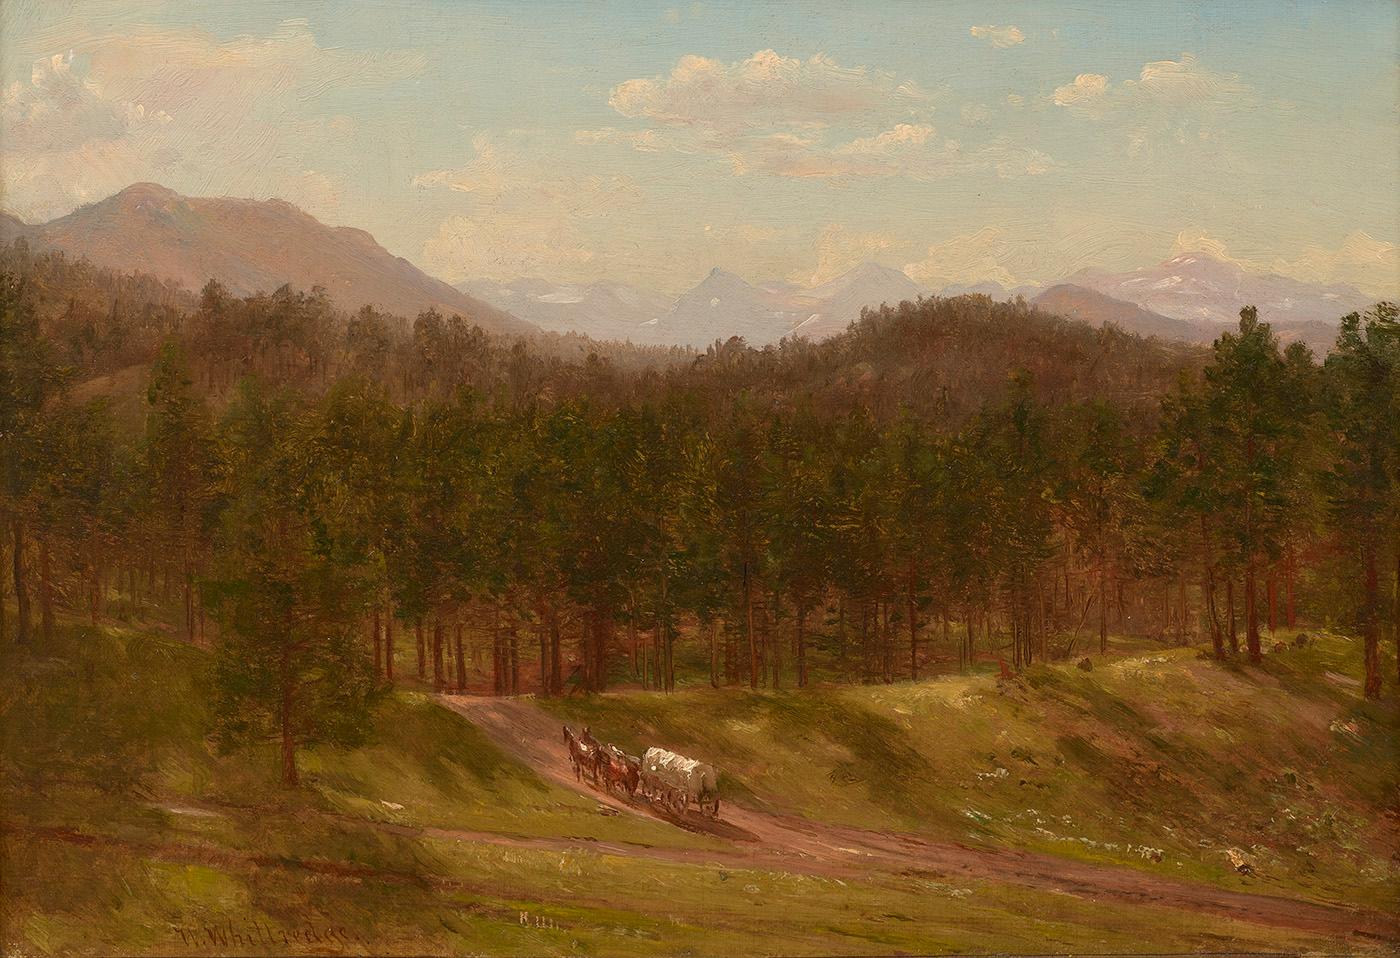 Landscape Painting Thomas Worthington Whittredge - Un sentier de montagne, Colorado, 1868